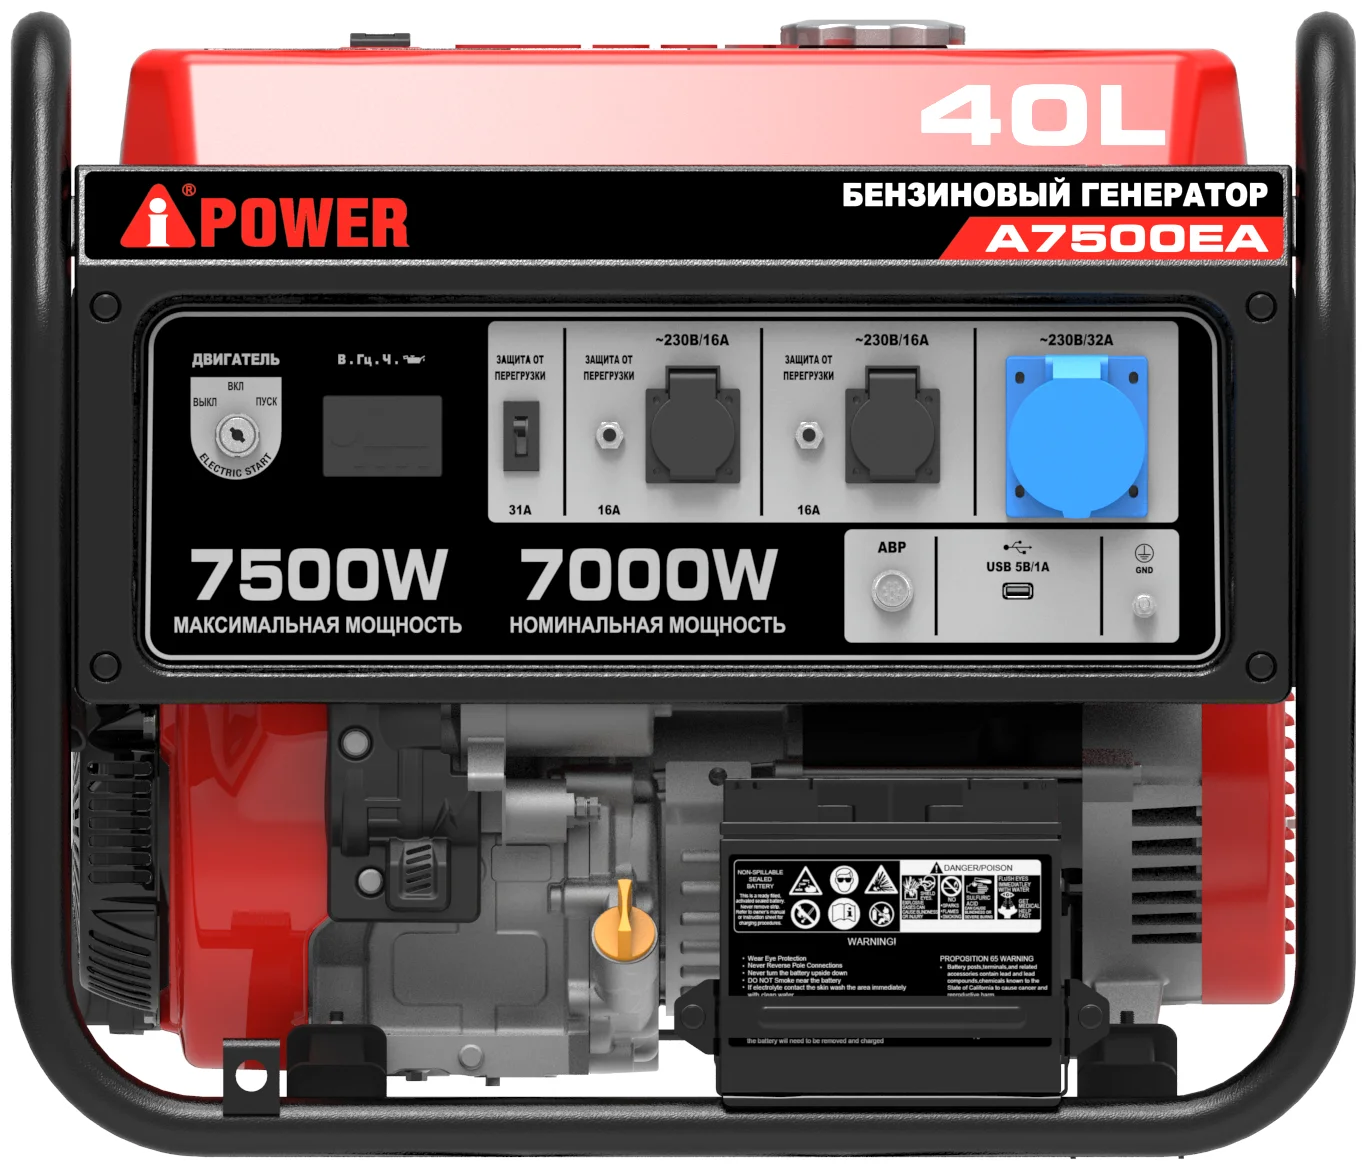 A-iPower A7500EA, (7500 Вт) - расход топлива: 4.13 л/с